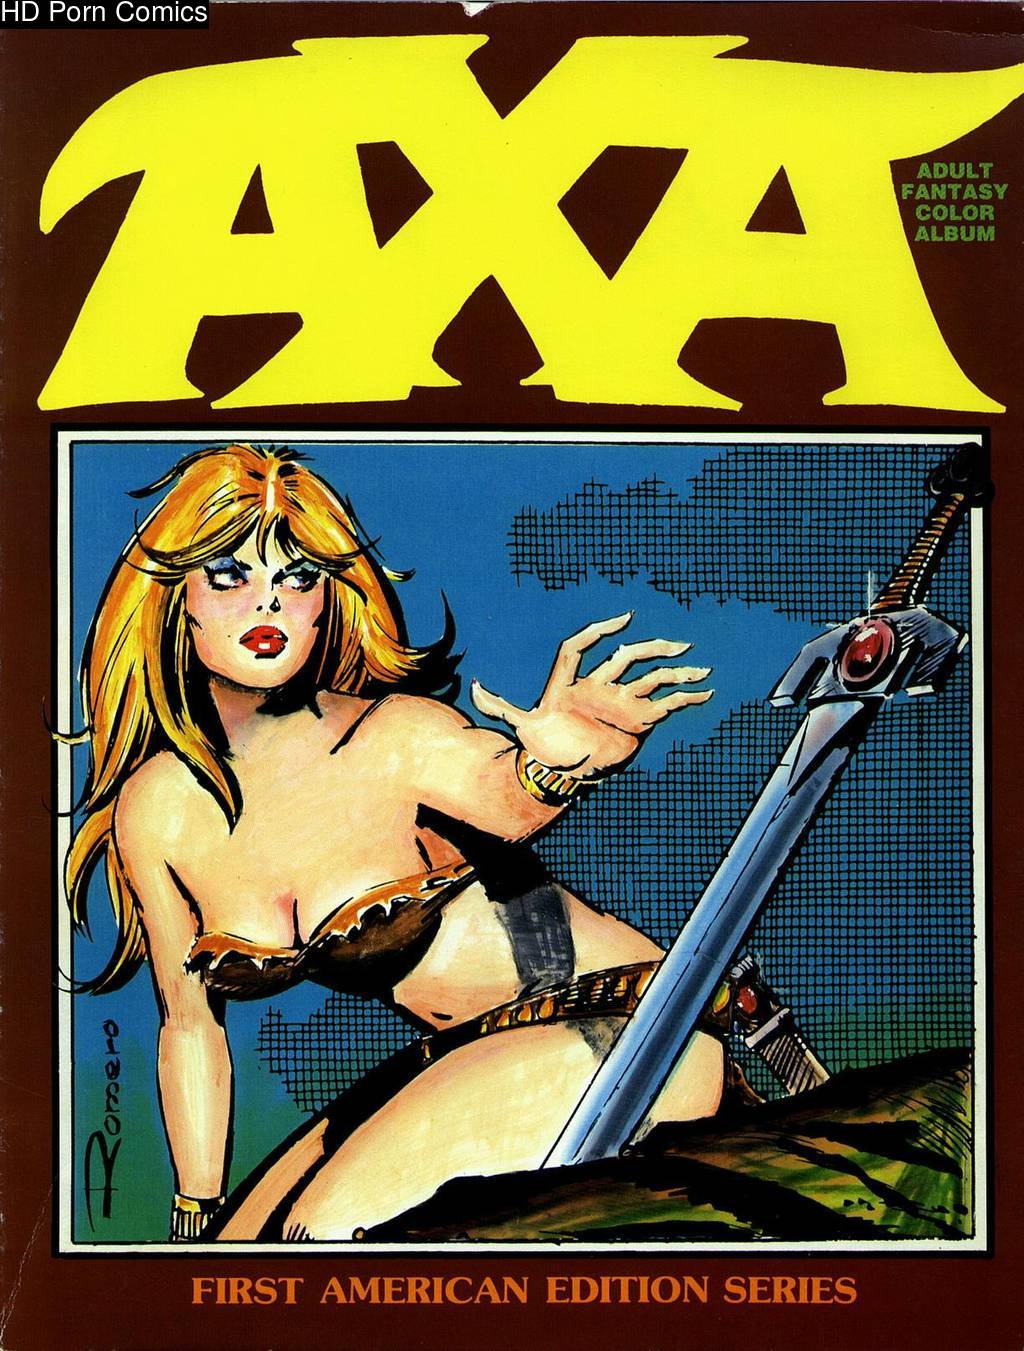 Axa Adult Fantasy Color Album comic porn | HD Porn Comics